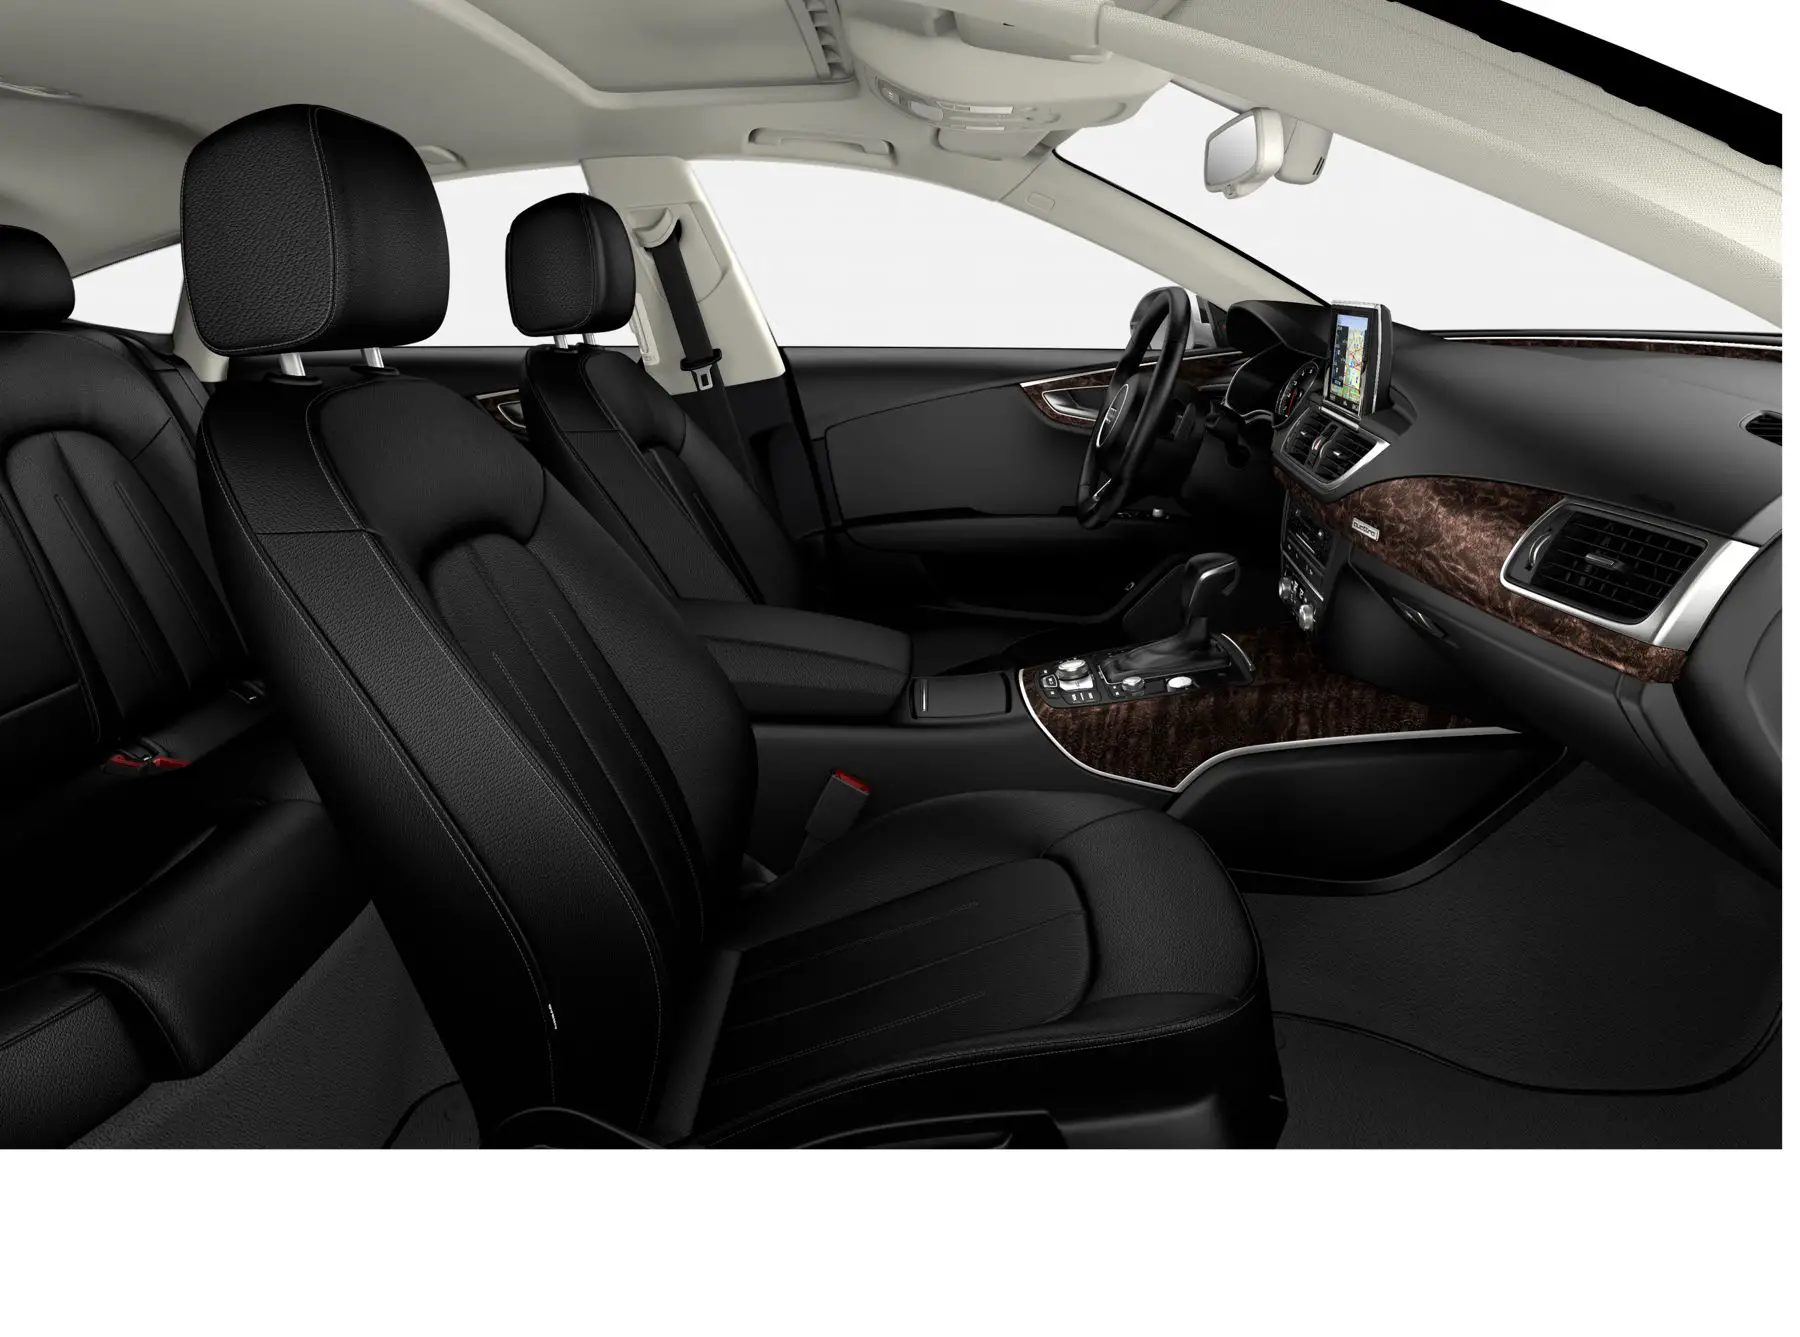 Audi A7 Prestige interior front seat view